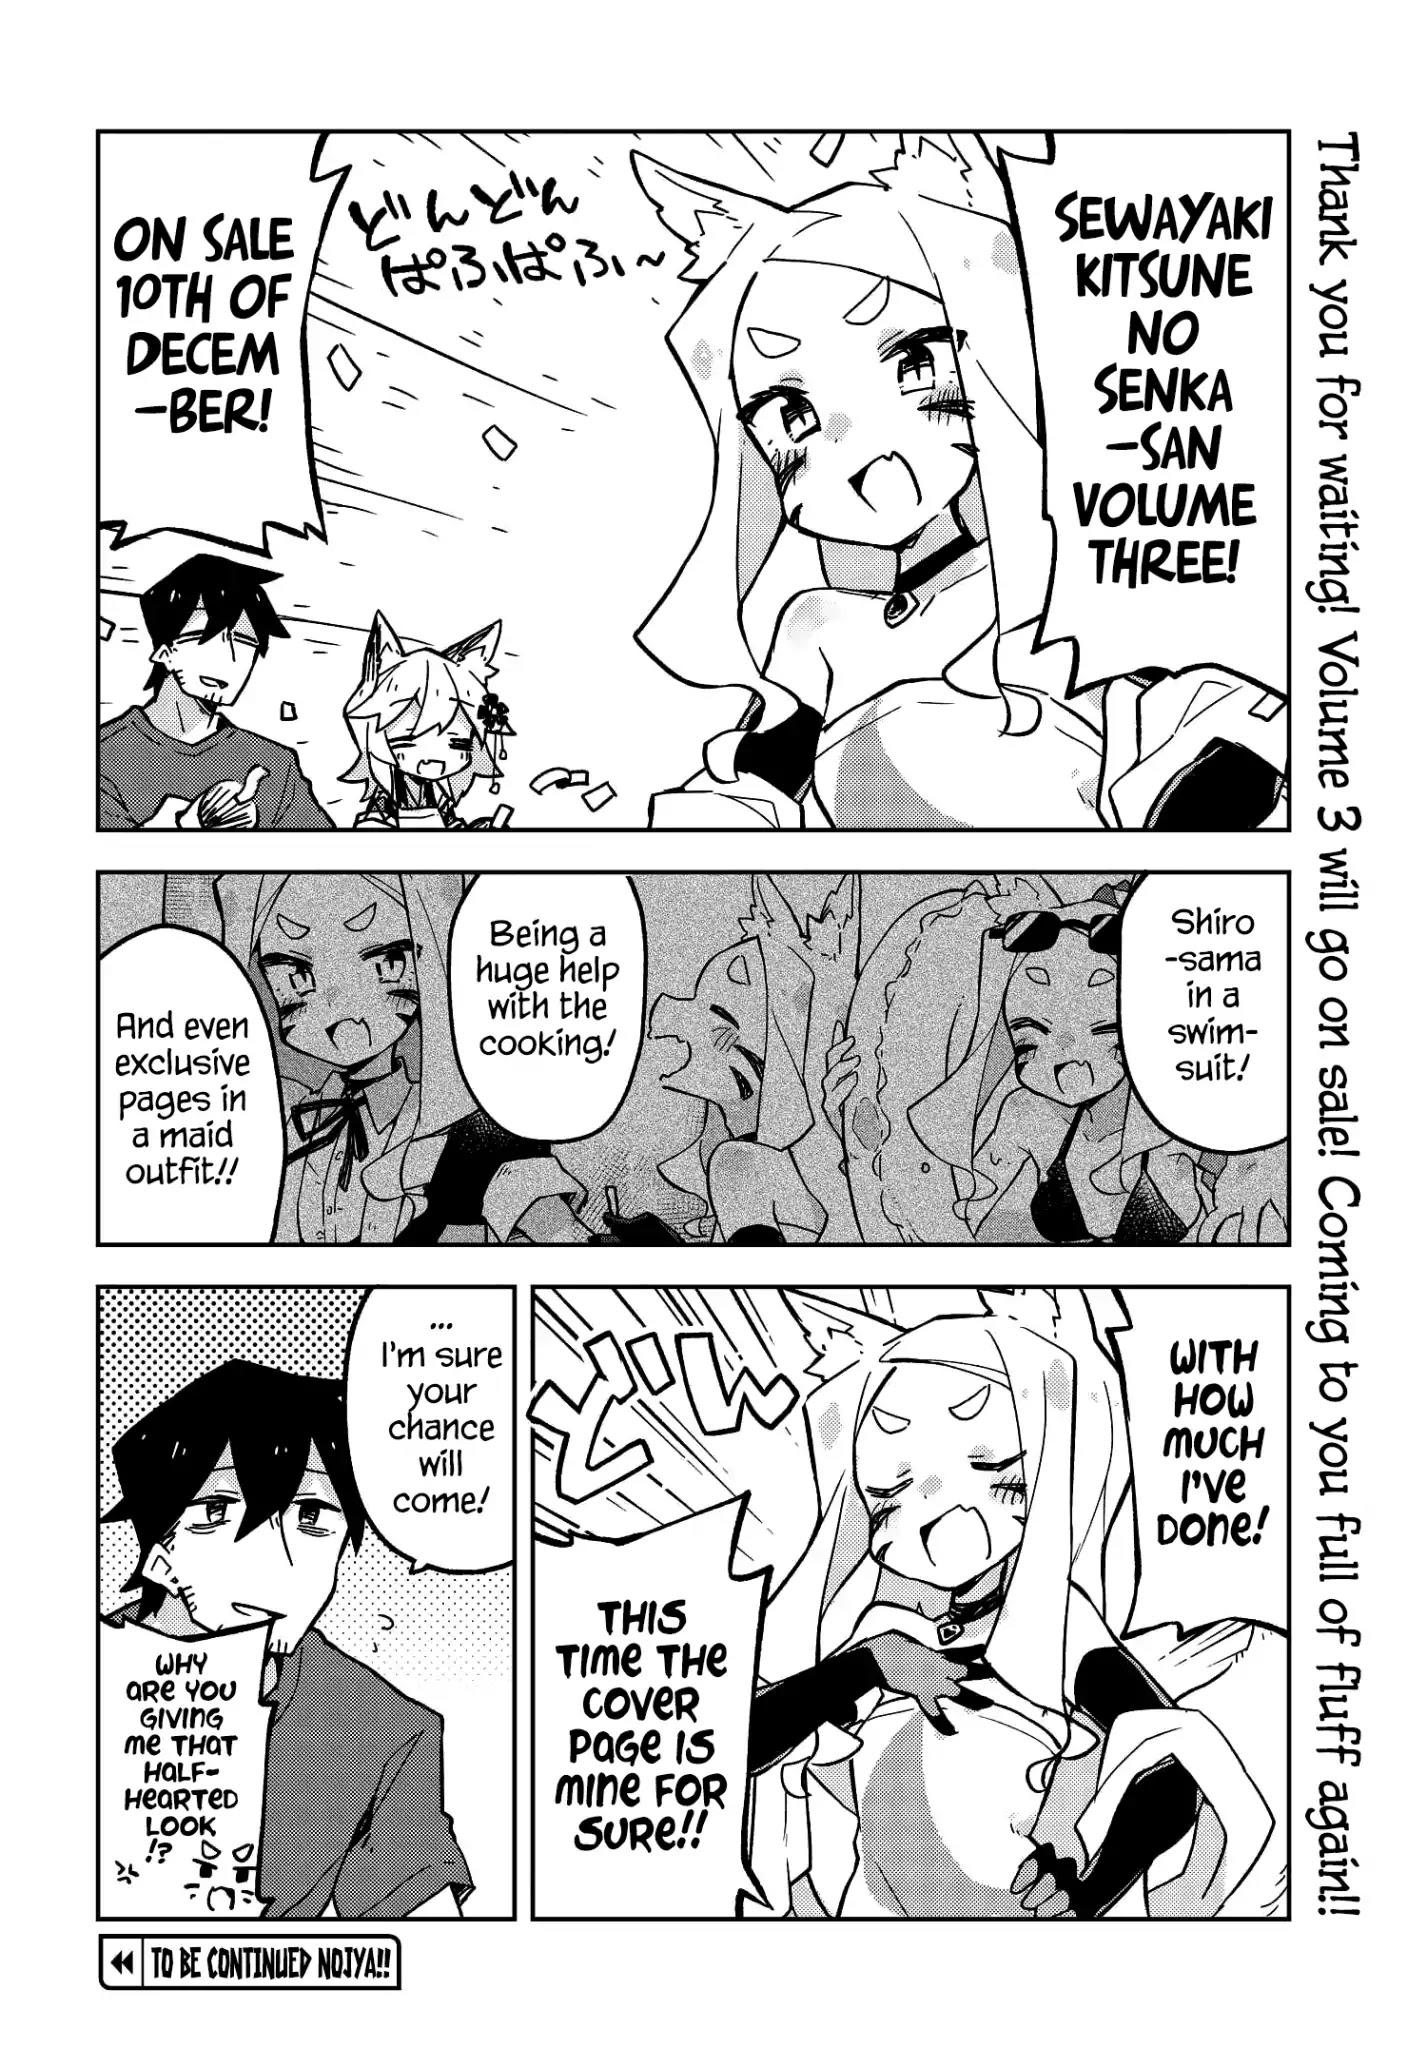 Sewayaki Kitsune No Senko-San Chapter 24 page 4 - Mangakakalot